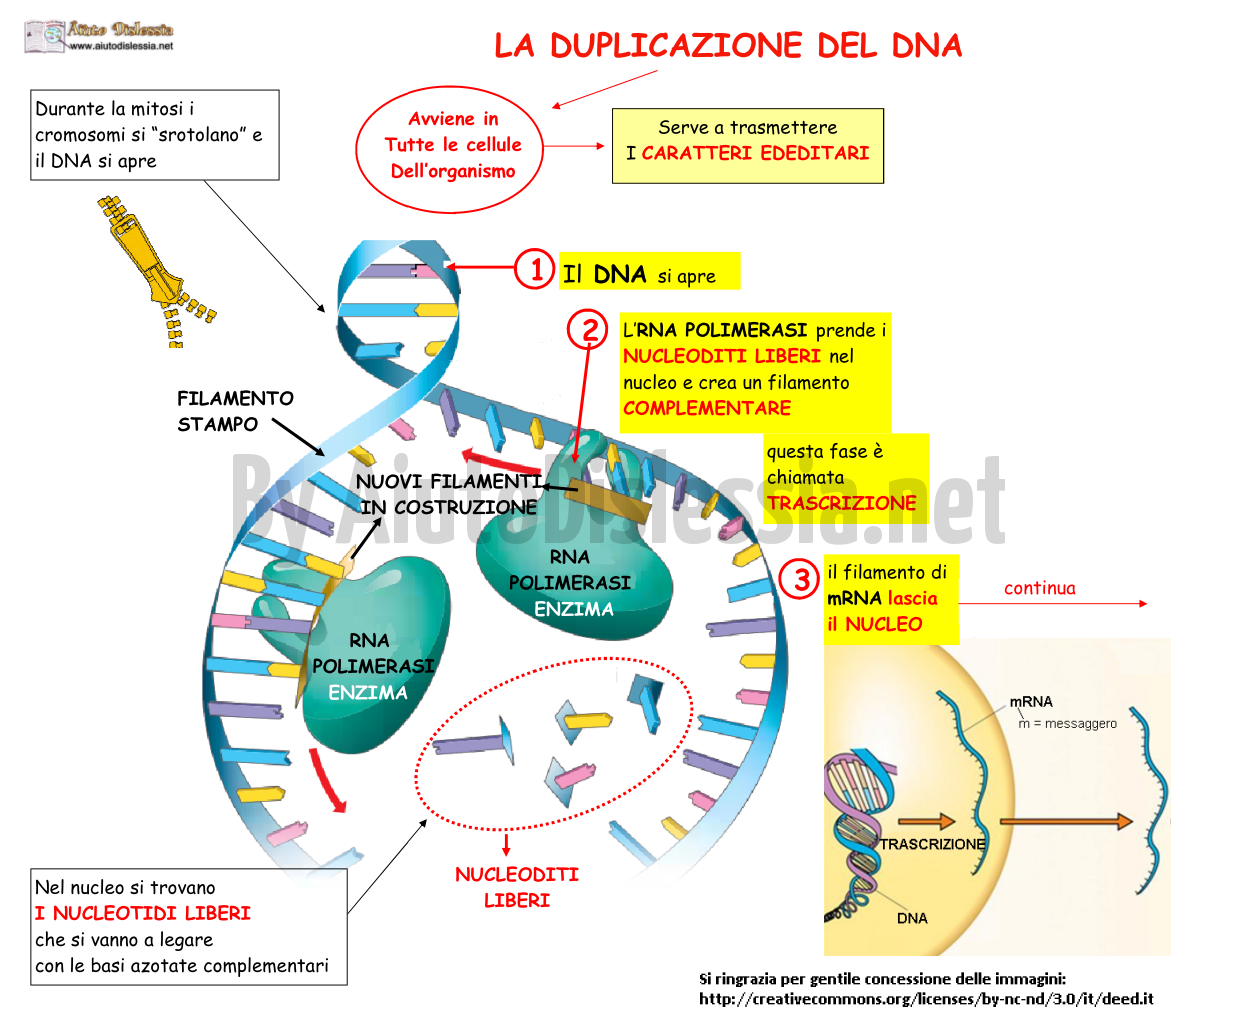 03. LA DUPLICAZIONE DEL DNA